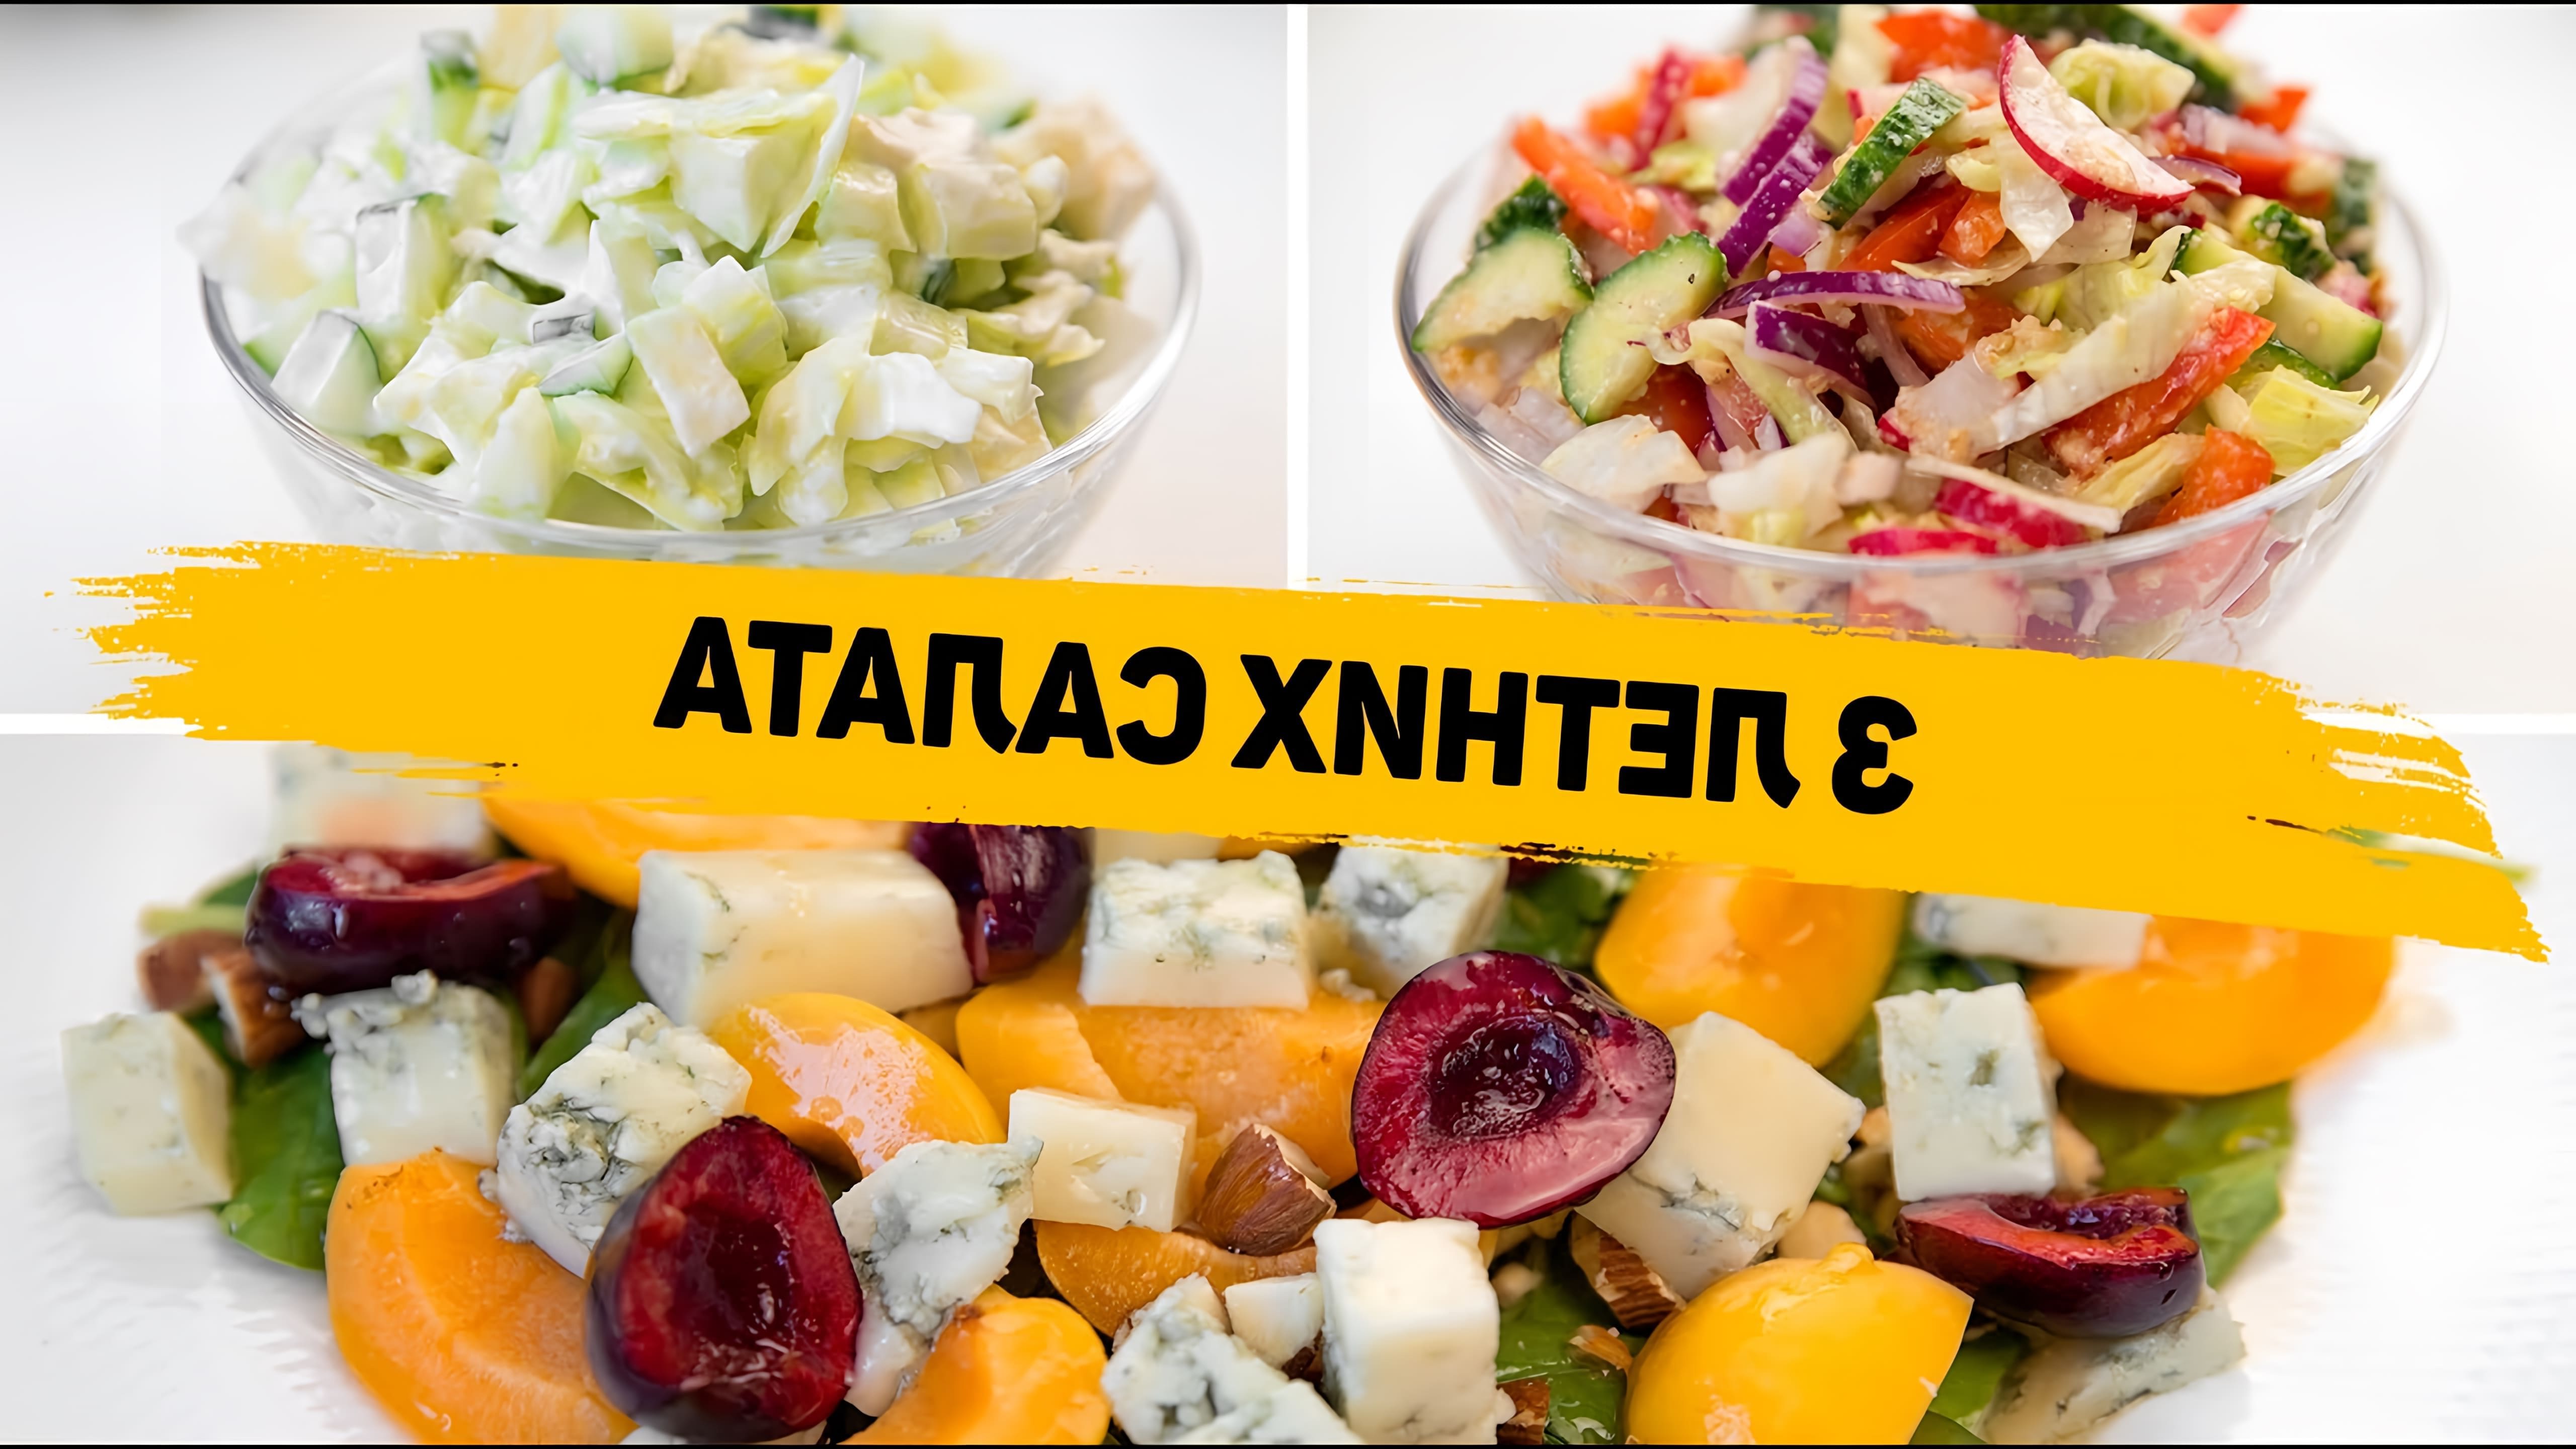 В этом видео демонстрируются три рецепта летних салатов